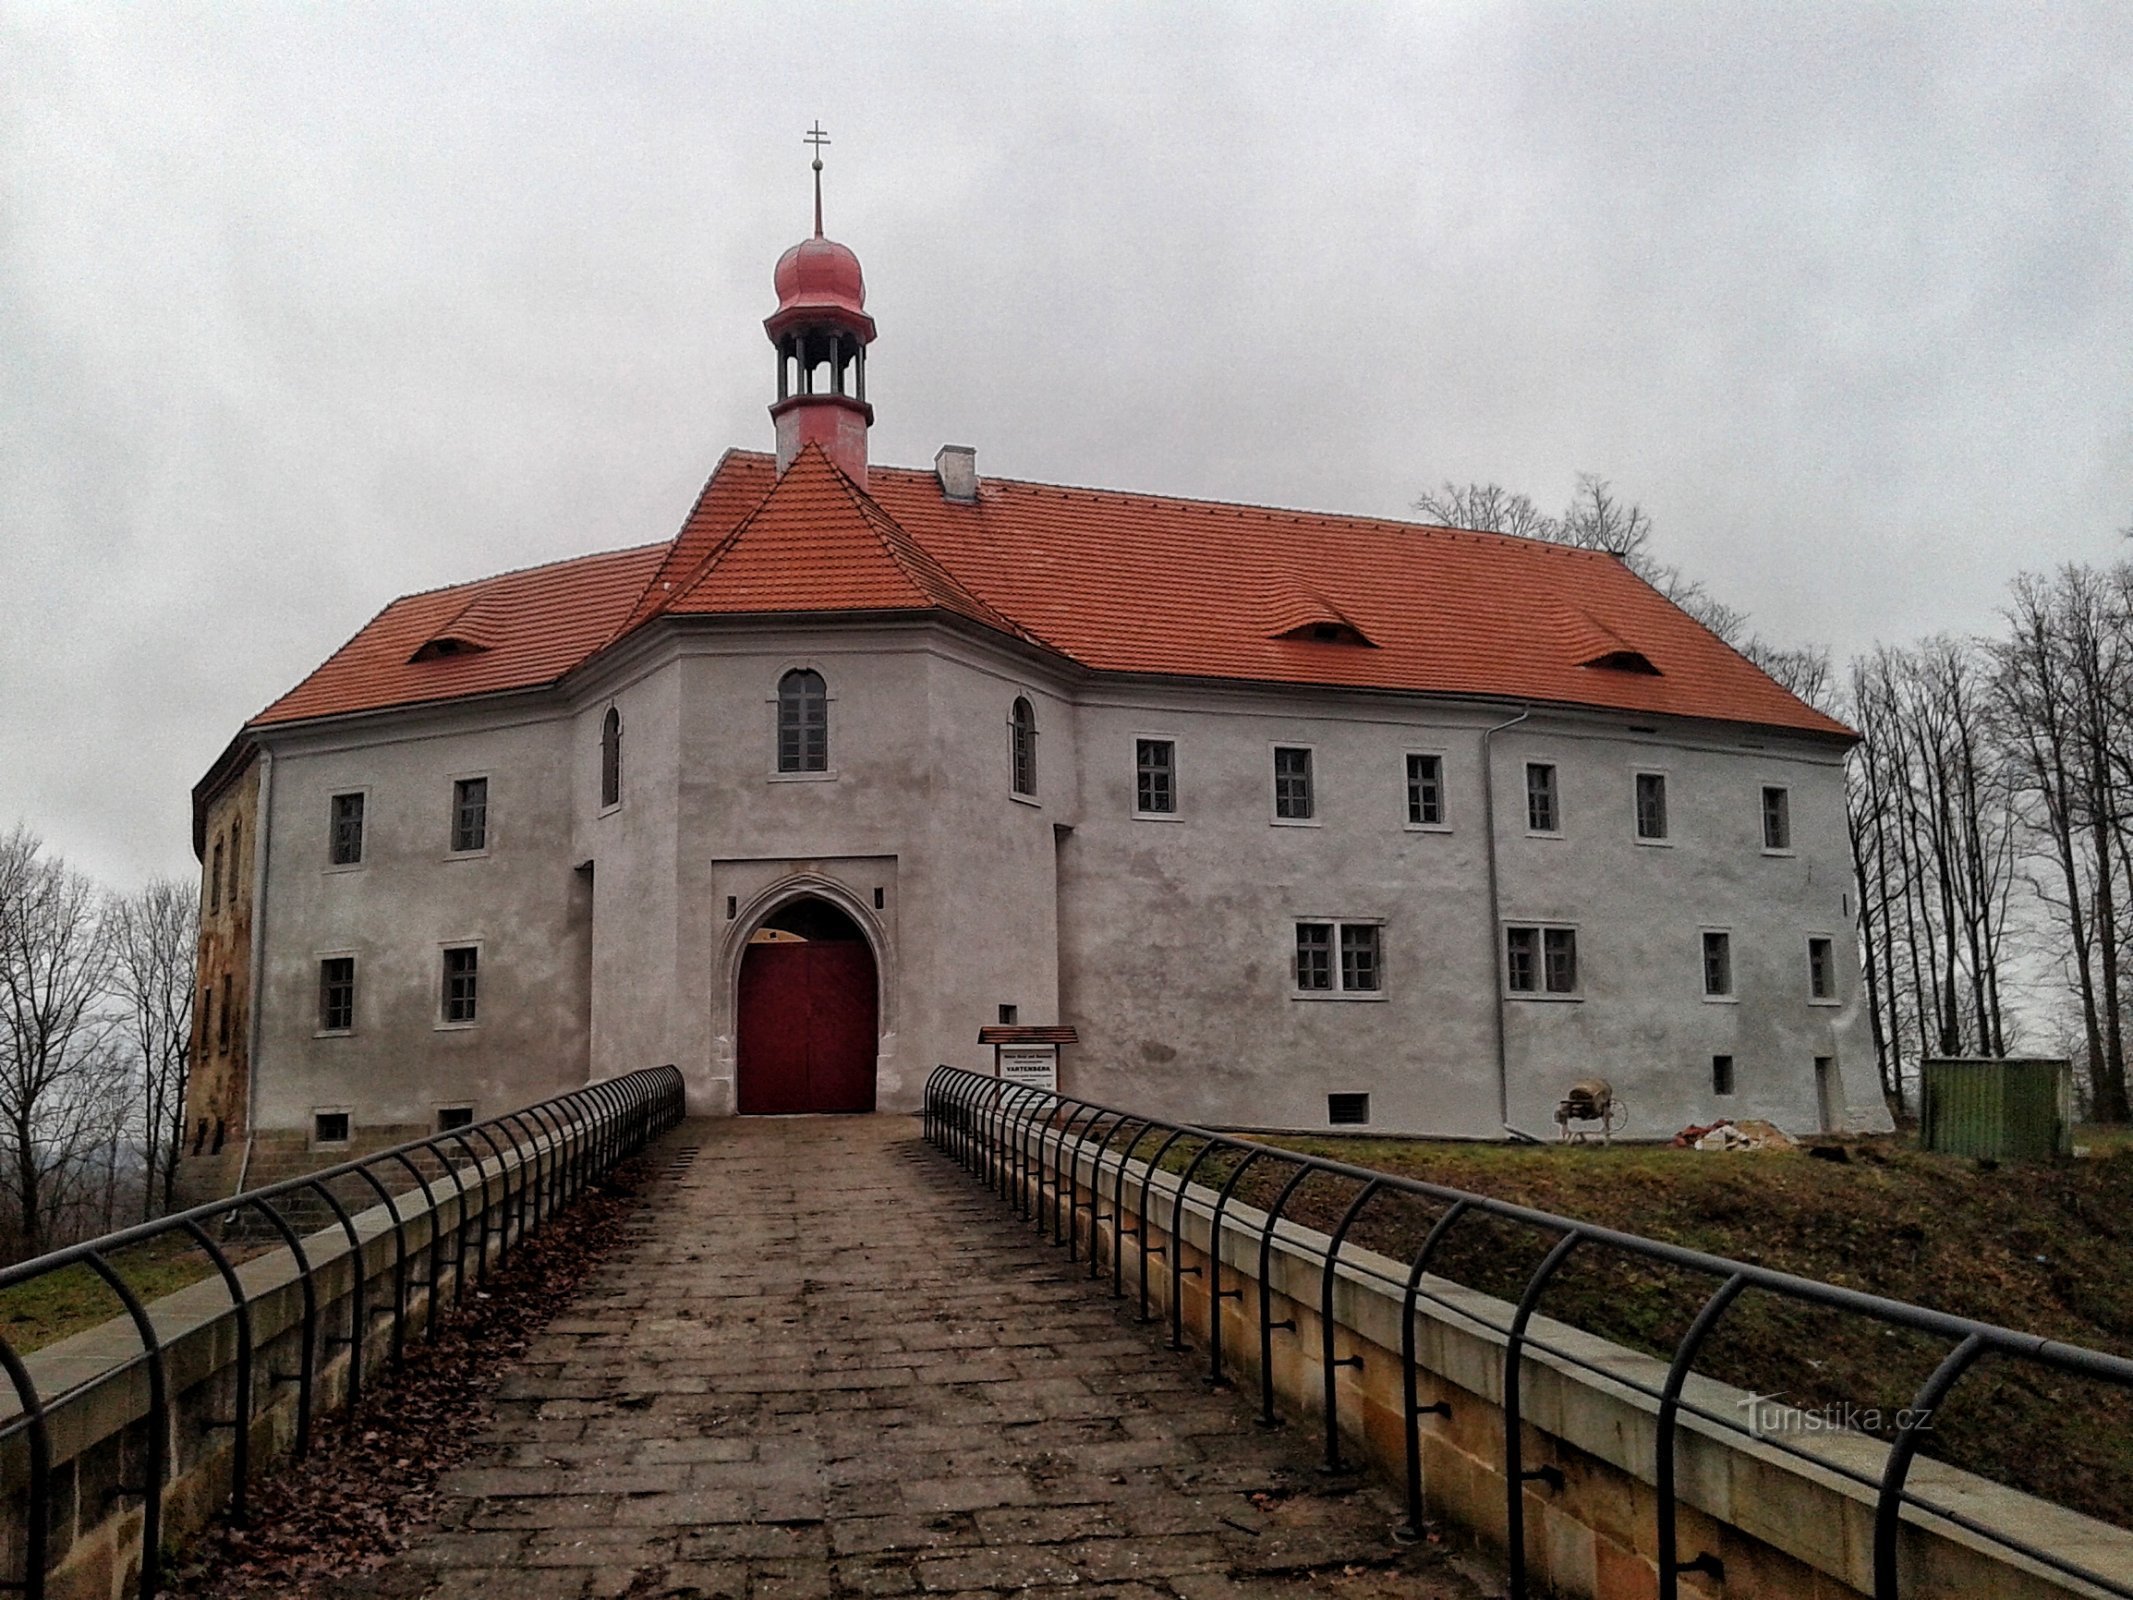 Castelo Vartenberg